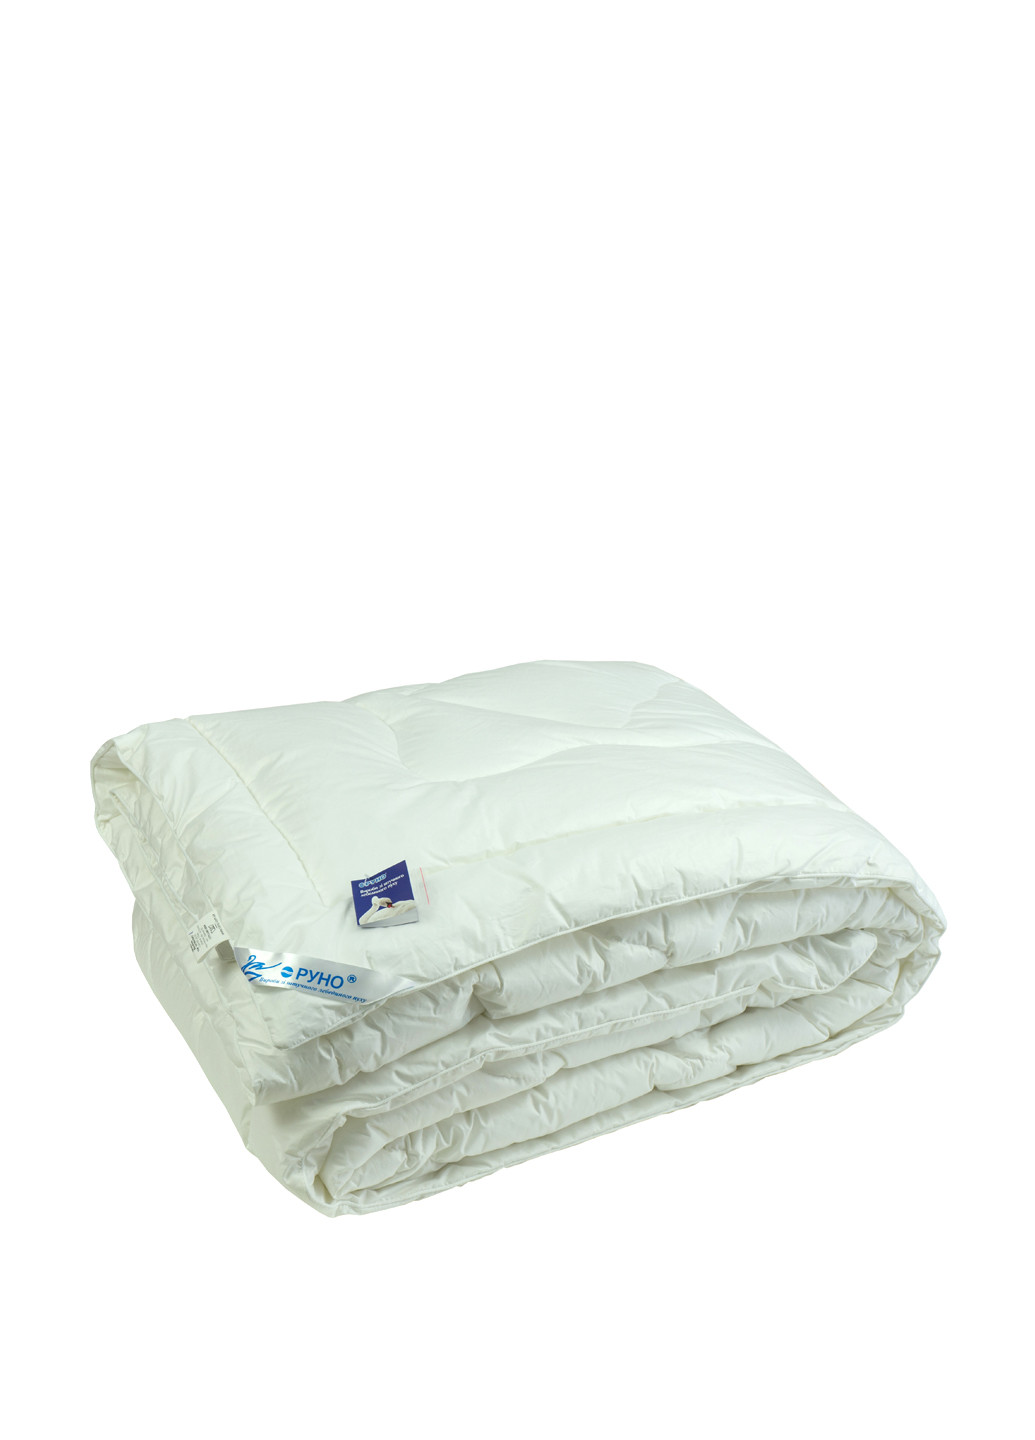 Одеяло с искуственного пуха 172х205 зимнее Руно однотонное белое